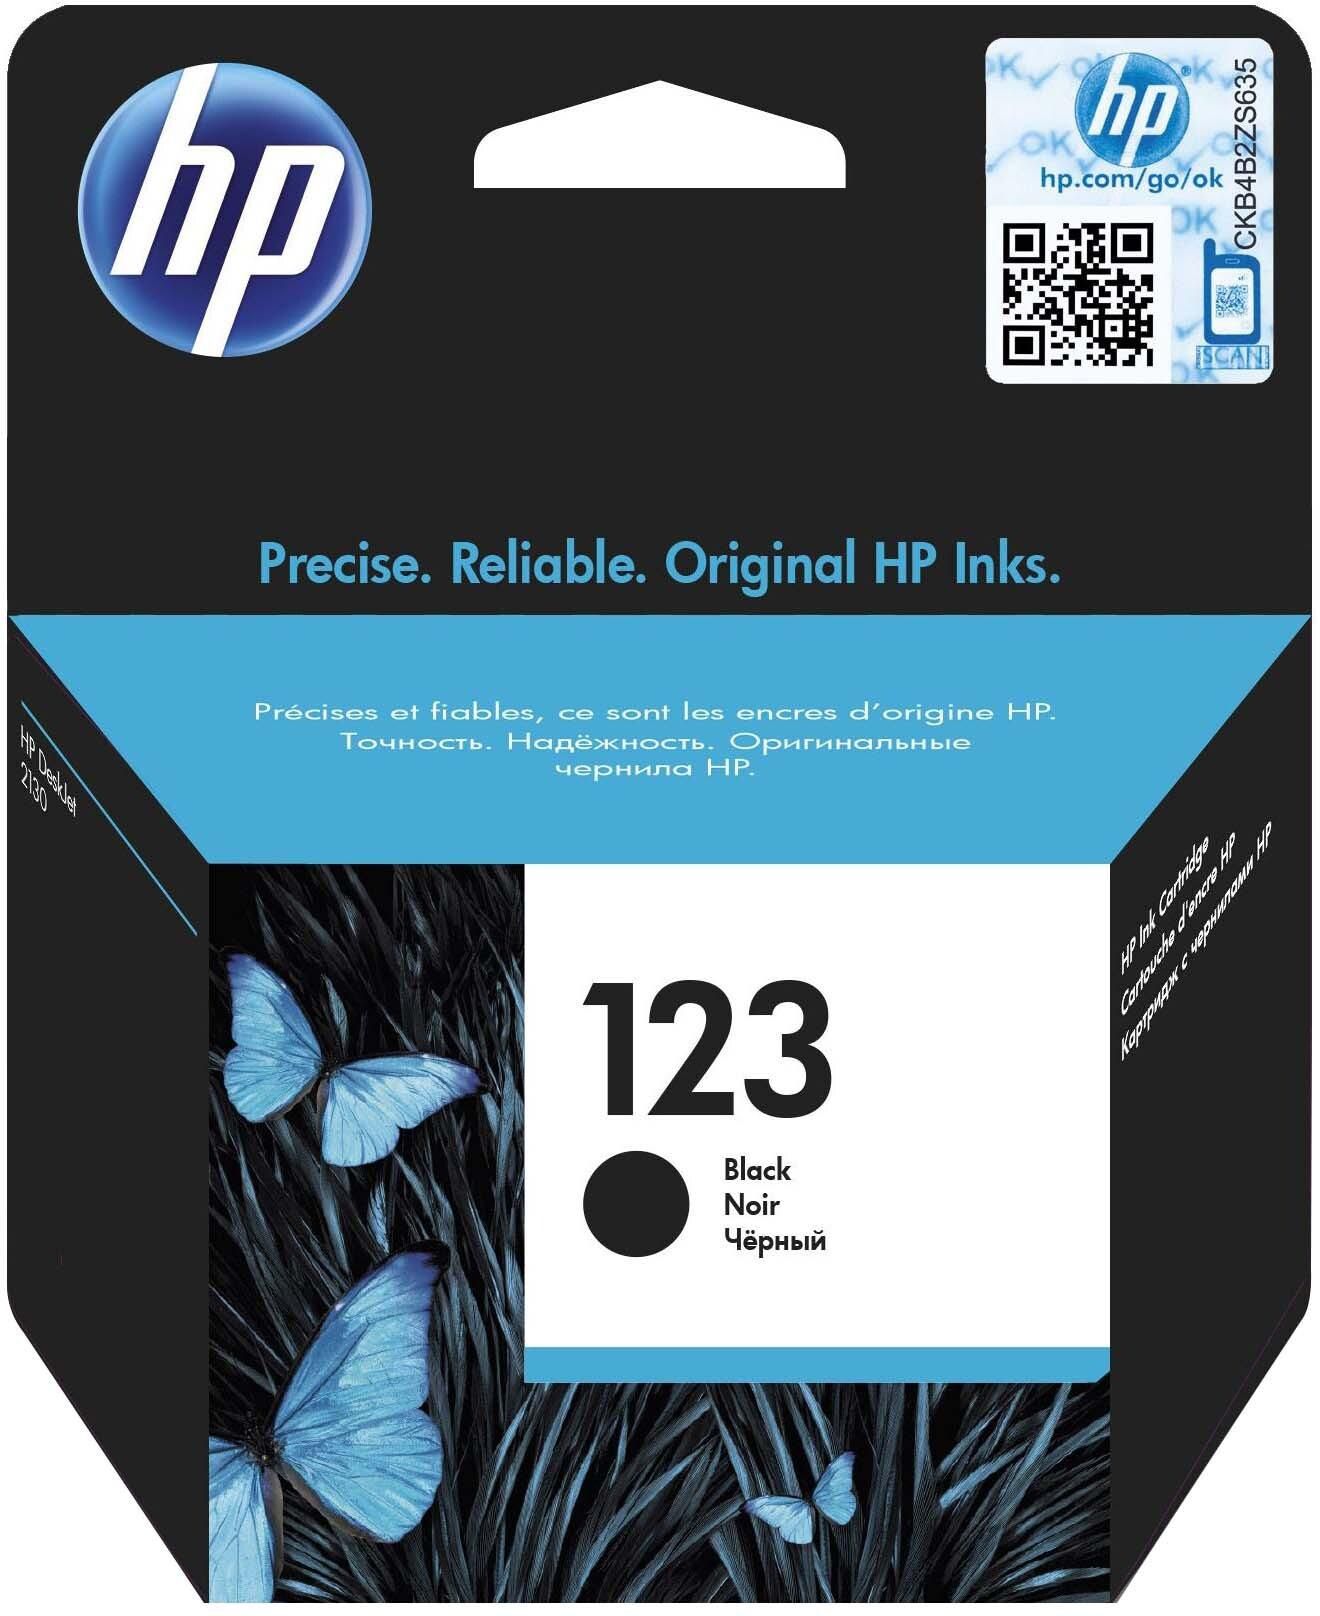 HP 123 Black Original Ink Cartridge [F6V17AE]   Works with HP DeskJet 2130, 2620, 2630, 2632, 3